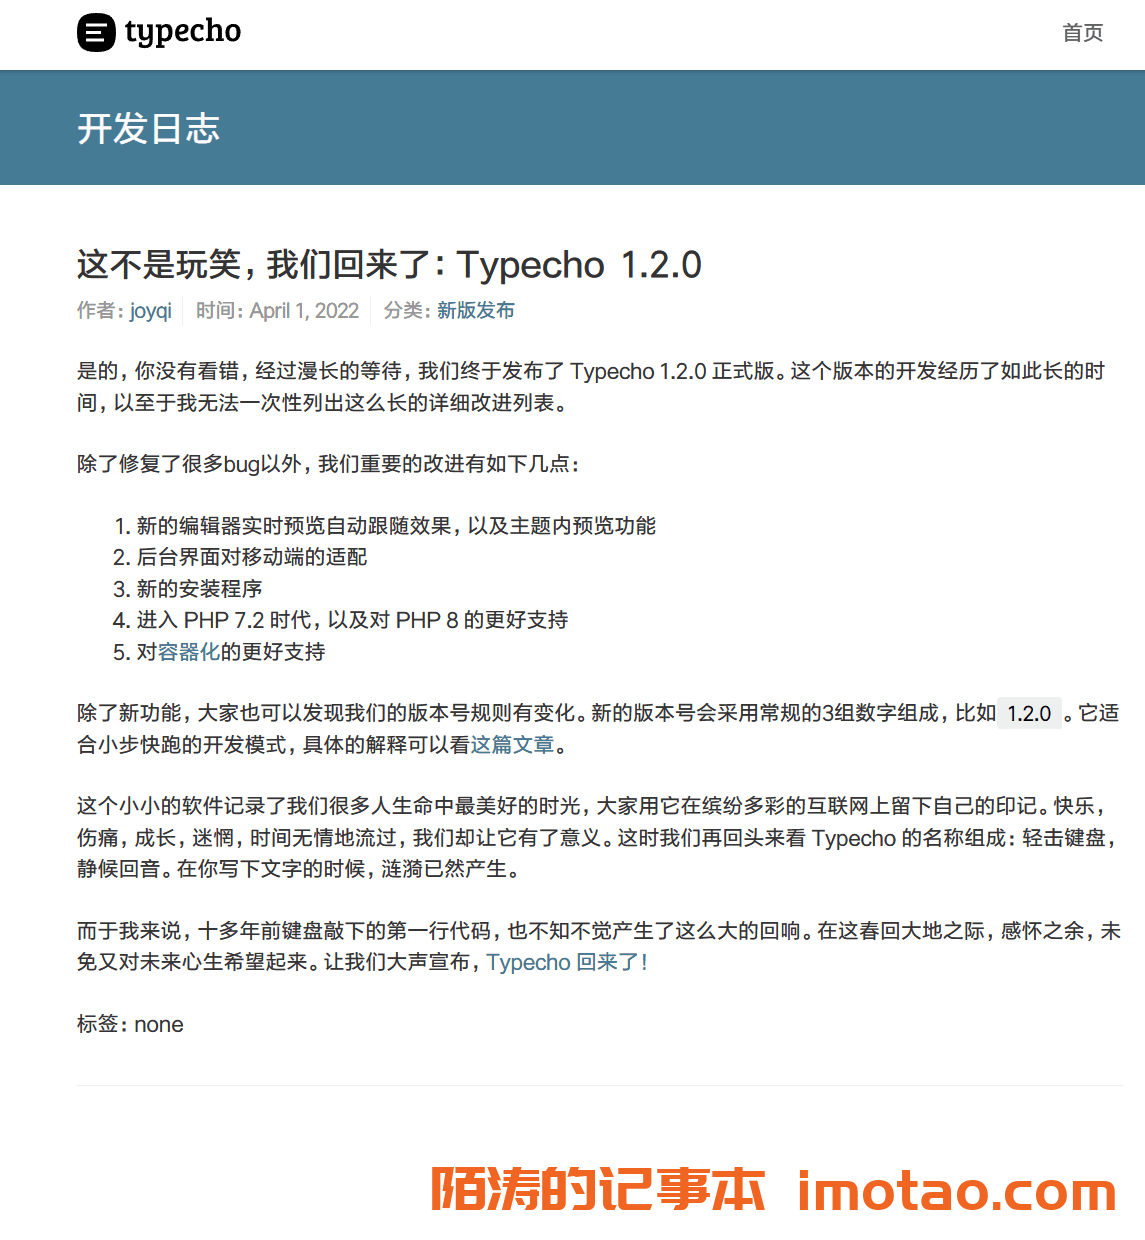 Typecho于2022年愚人节发布了1.2正式版